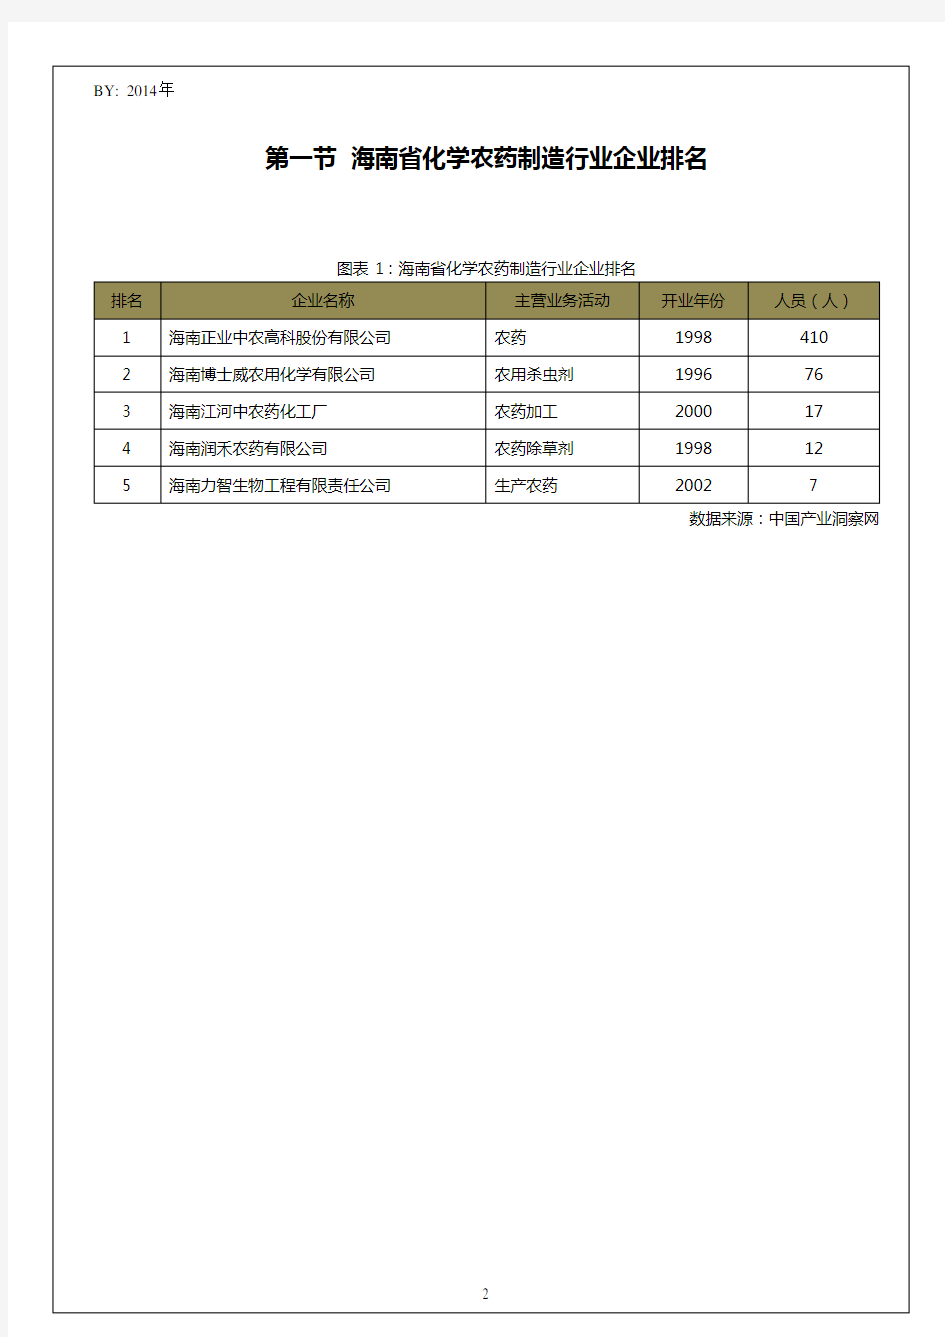 海南省化学农药制造行业企业排名统计报告